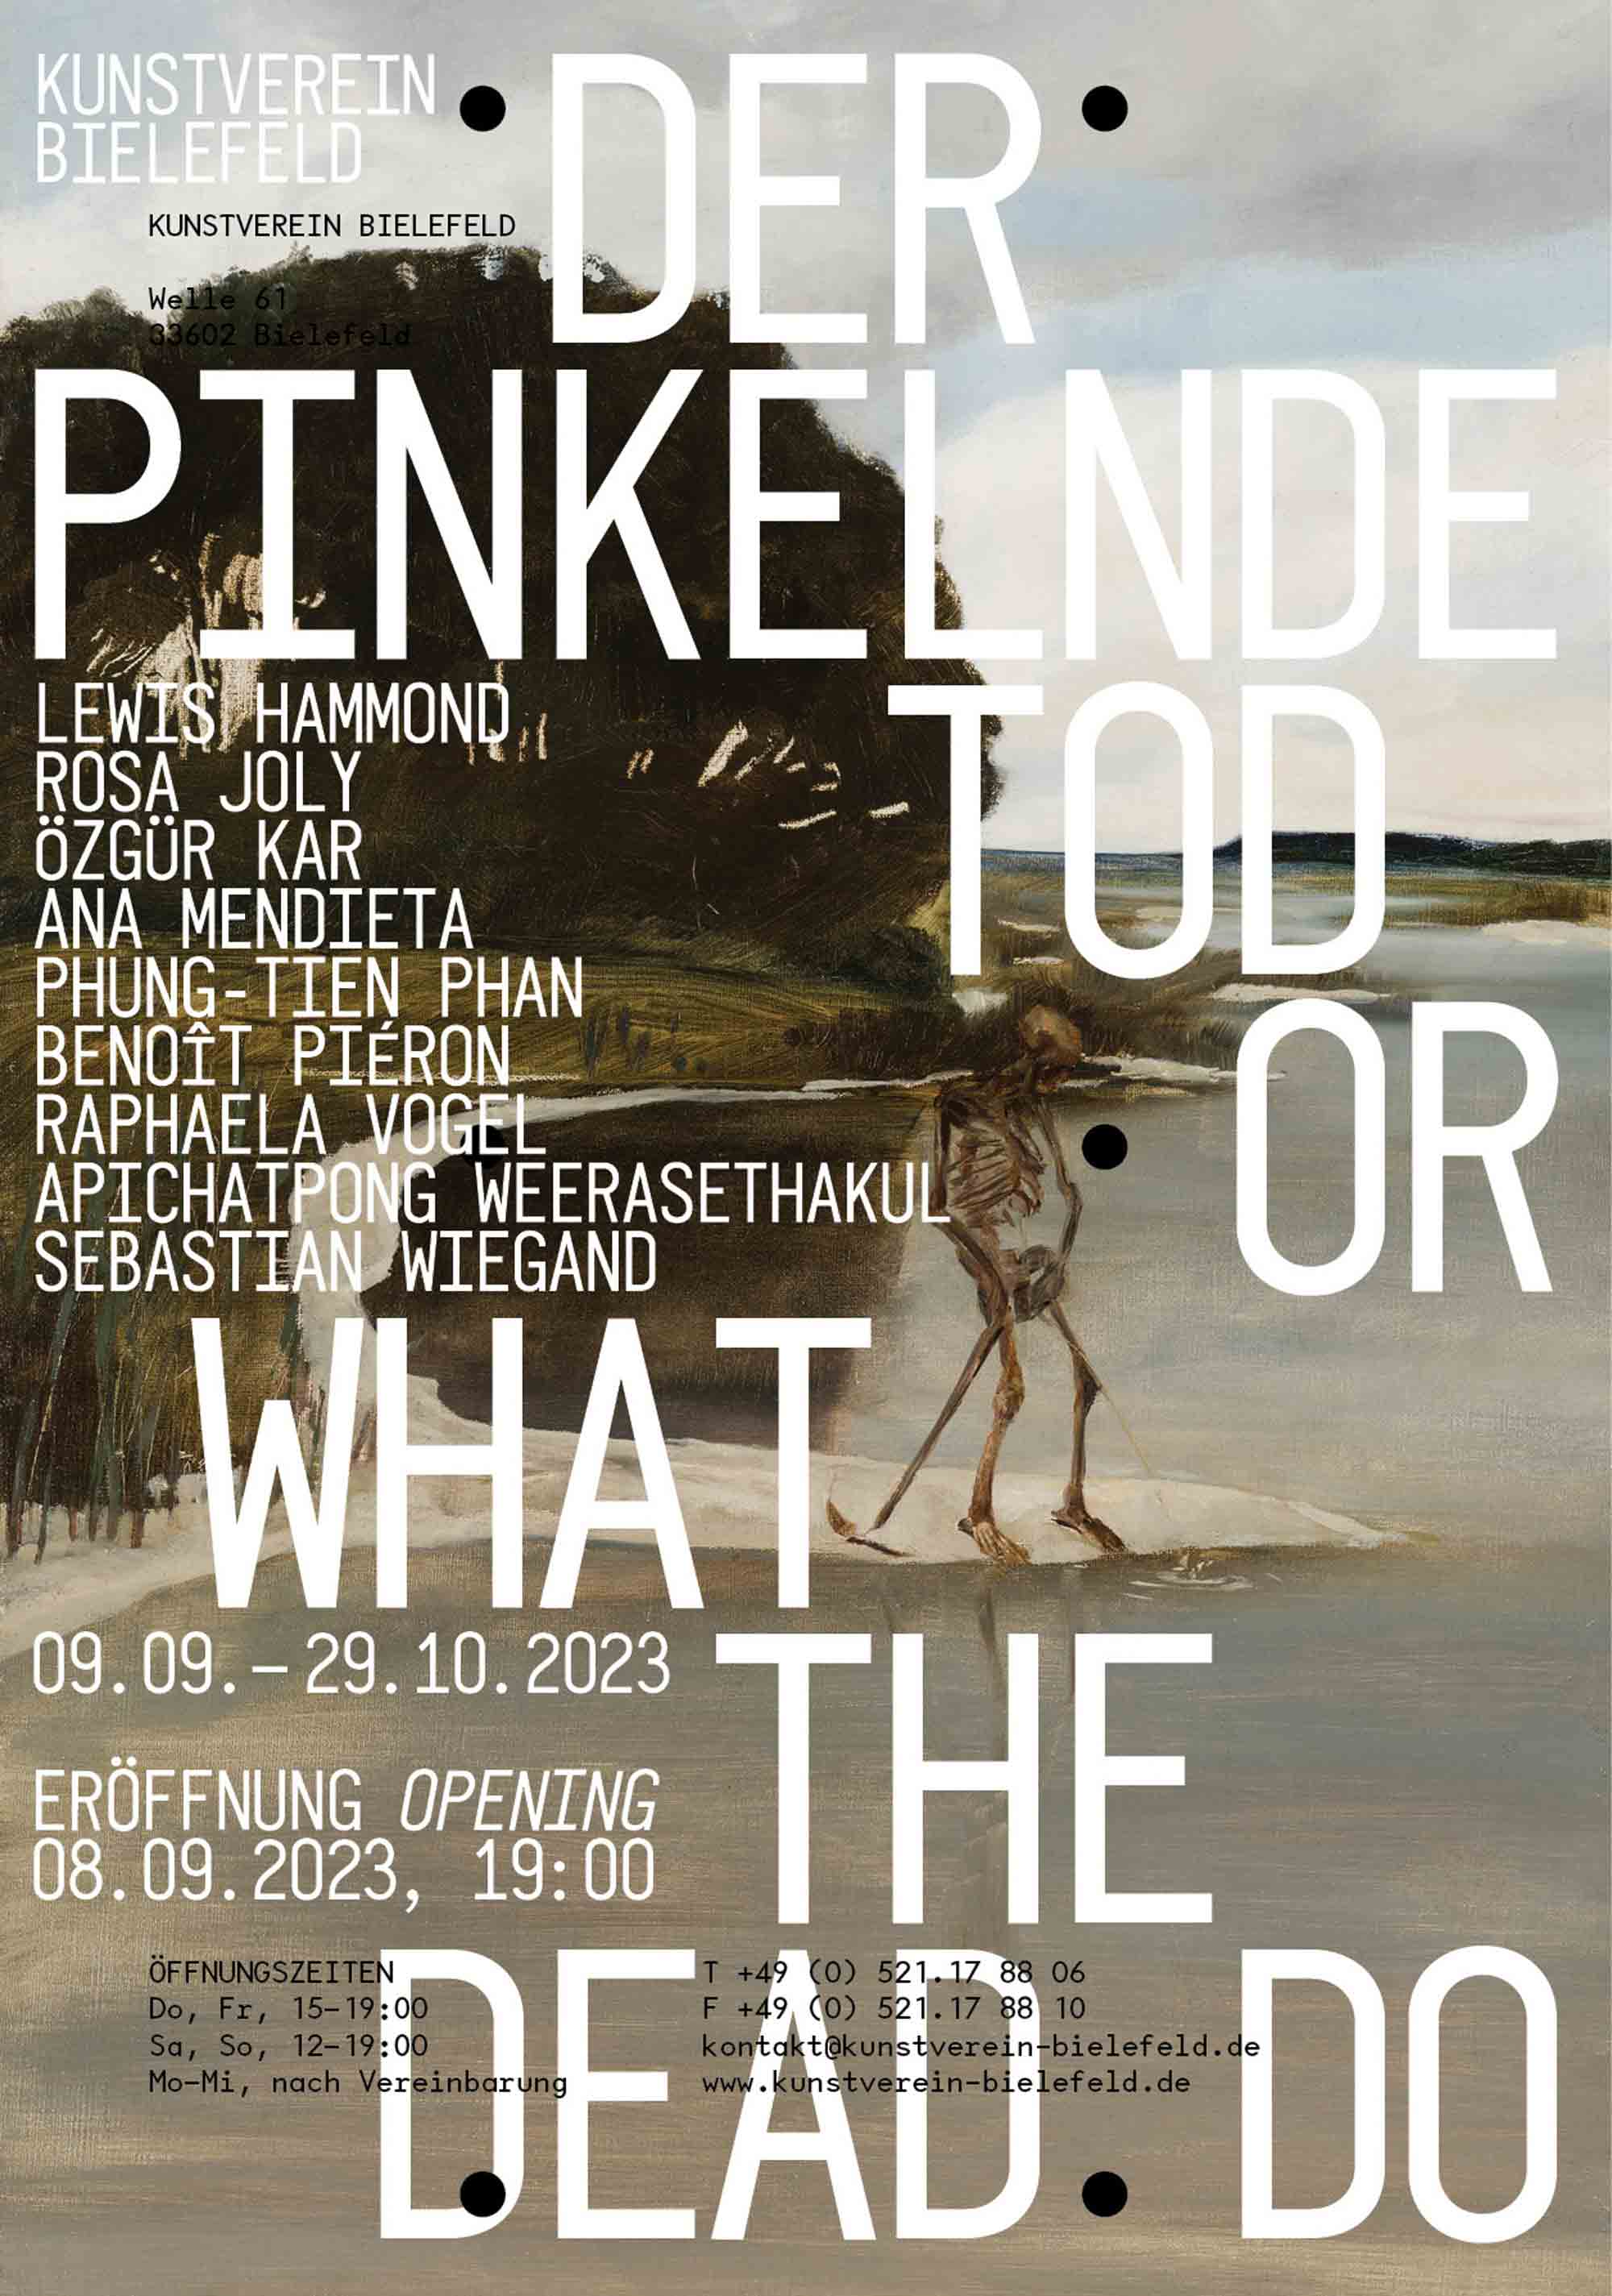 Kunstverein Bielefeld, »Der pinkelde Tod« or »What the Dead do«, 9. September bis 29. Oktober 2023